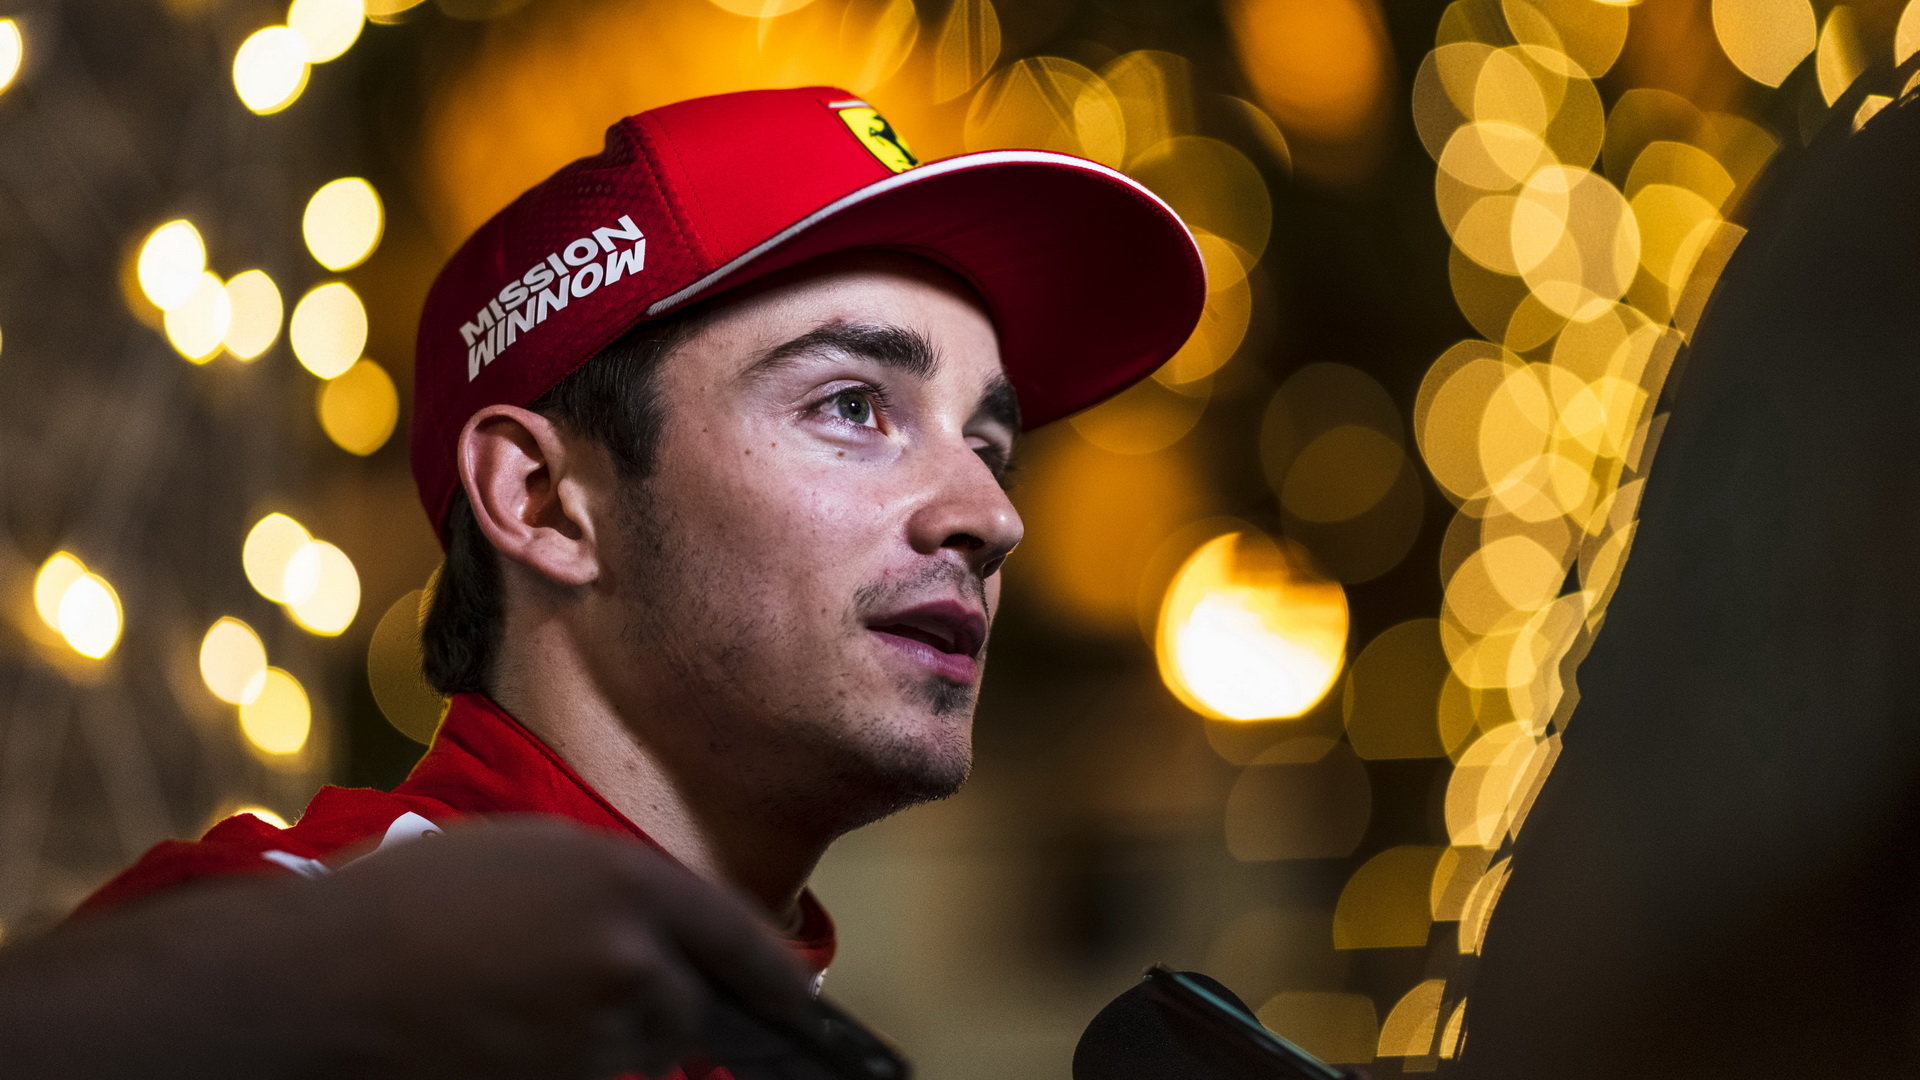 Charles Leclerc po vítězné kvalifikaci v Bahrajnu